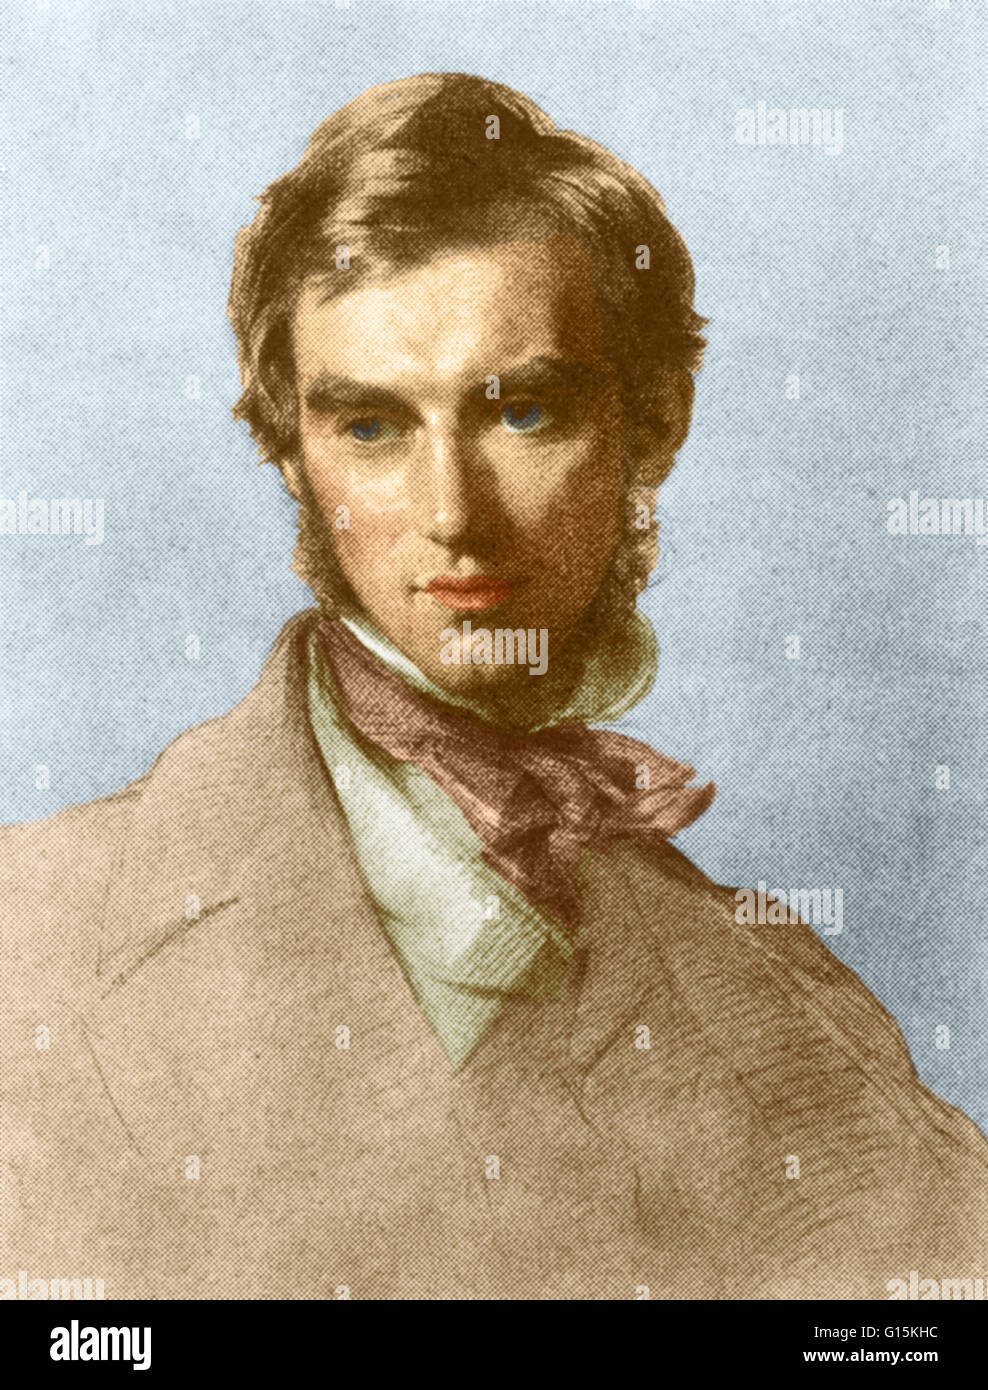 Farbe verbesserte Porträt von Joseph Dalton Hooker (1817-1911), eines der größten britischen Botaniker und Entdecker des 19. Jahrhunderts. Hooker war einer der Gründer der geographischen Botanik und Darwins engsten Freund und vertrauter. Er leitete die Ro Stockfoto